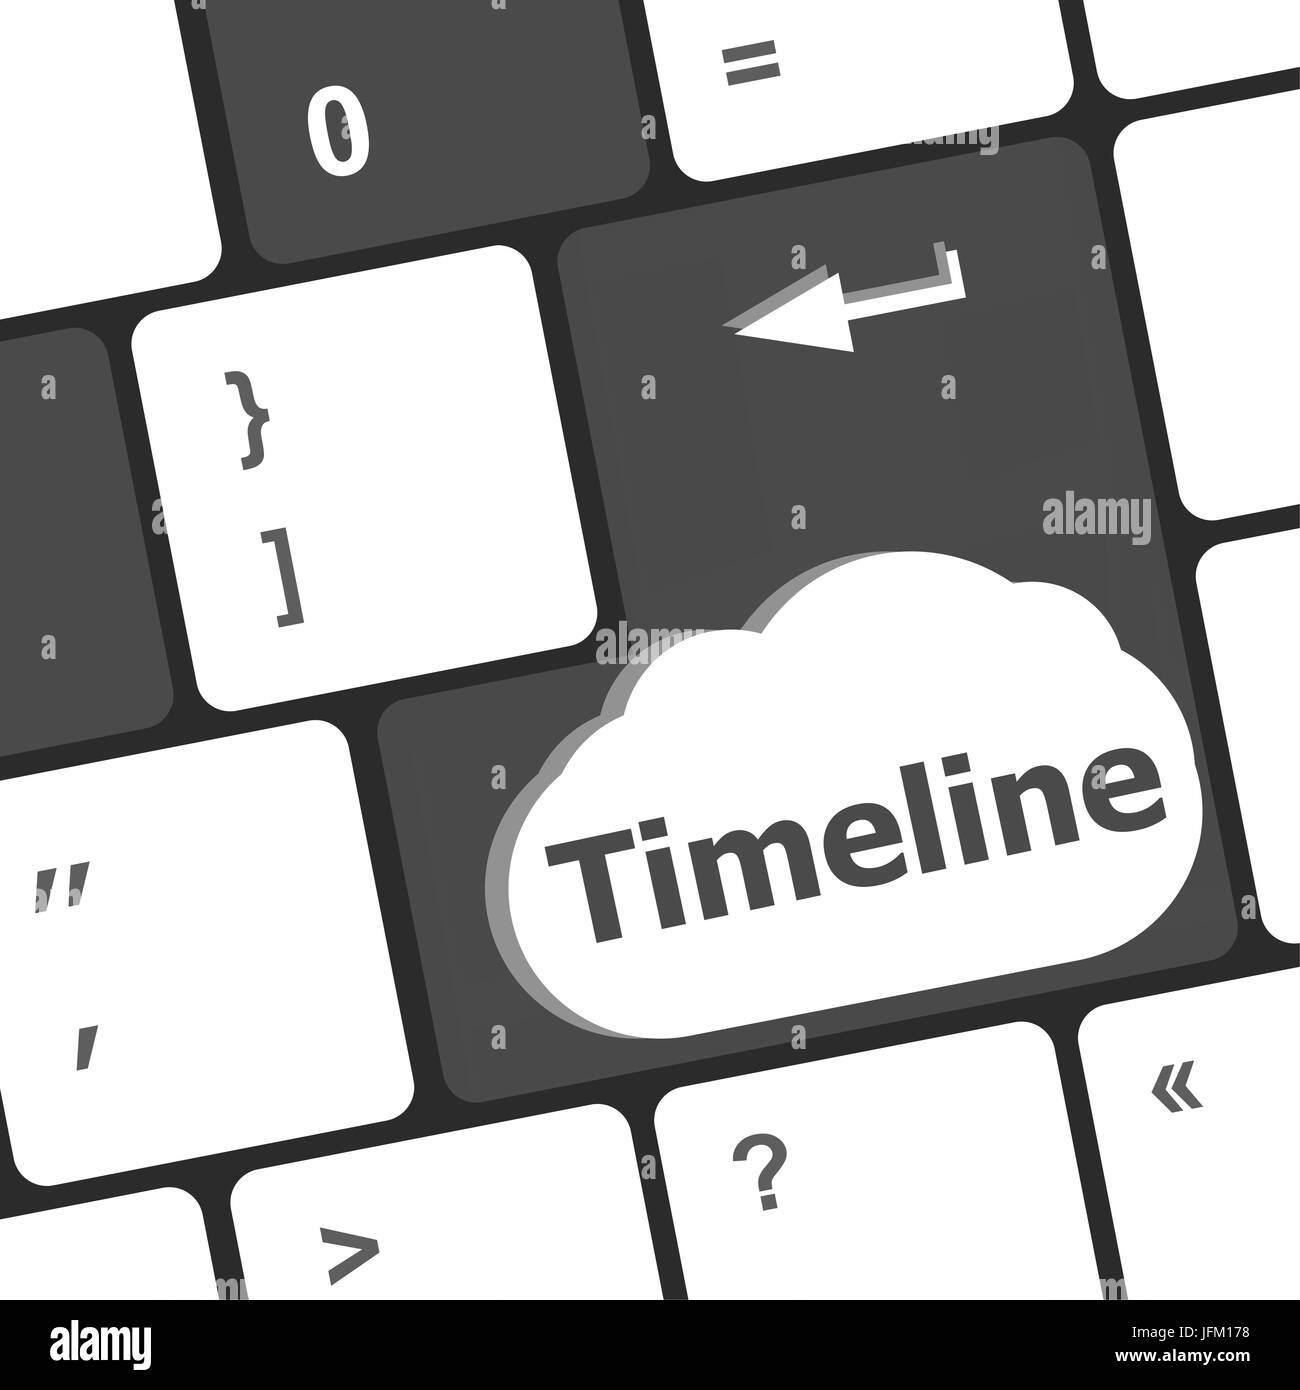 Timeline concept - mot sur les touches du clavier de l'ordinateur Banque D'Images